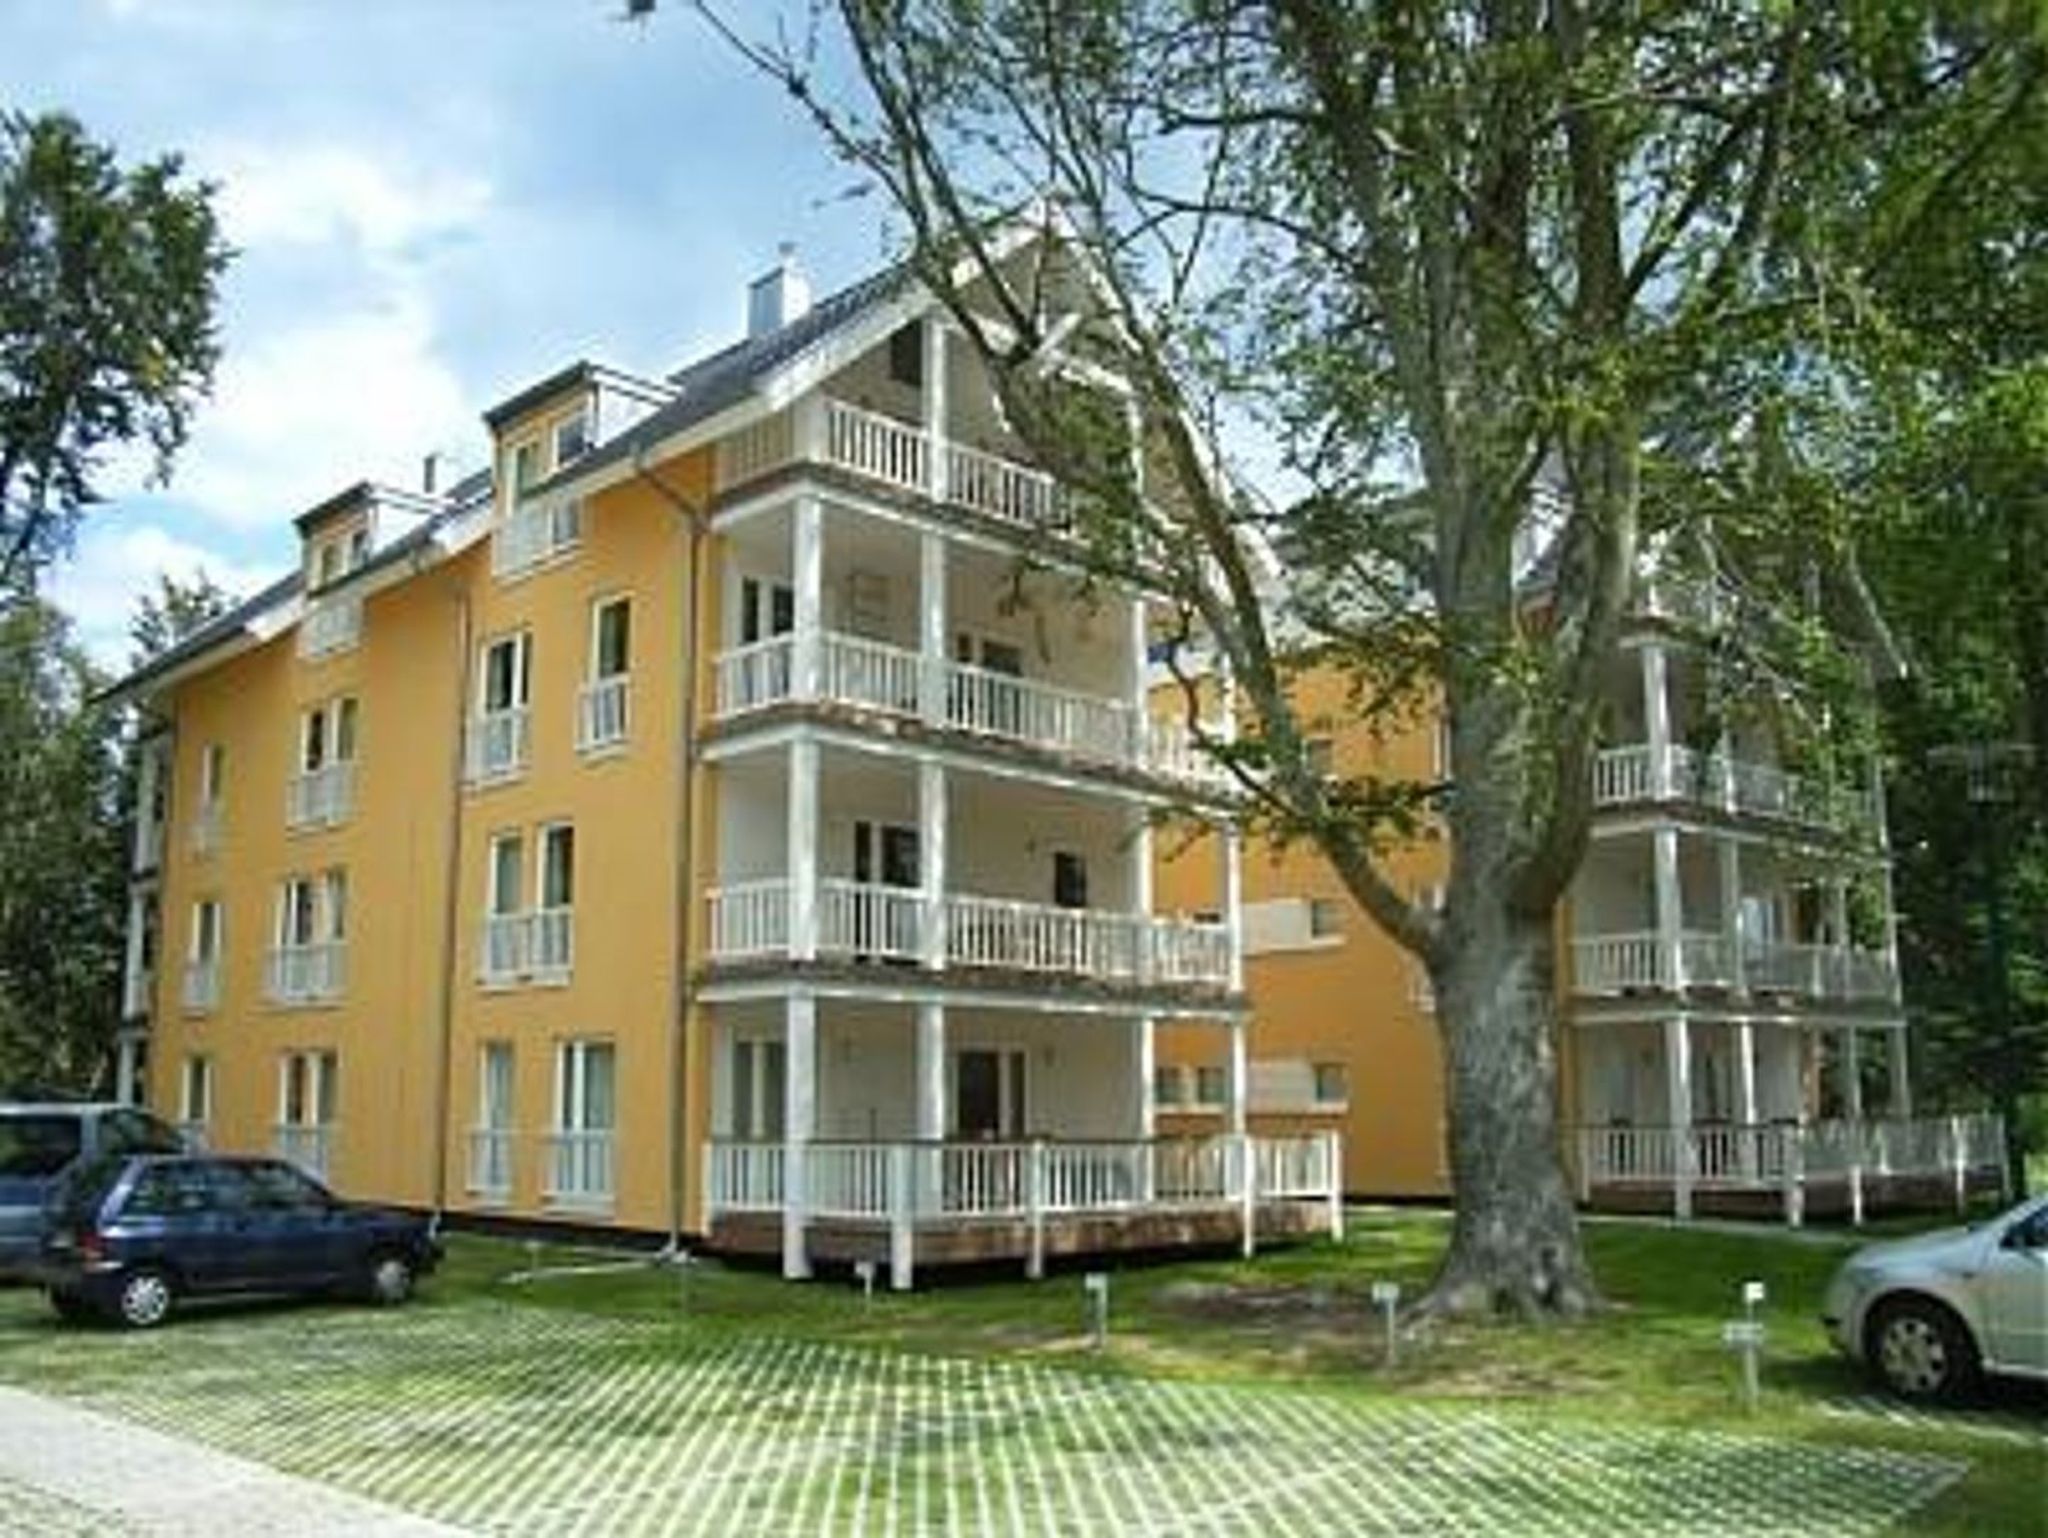 Hotel Altes Zollhaus am Klinikum